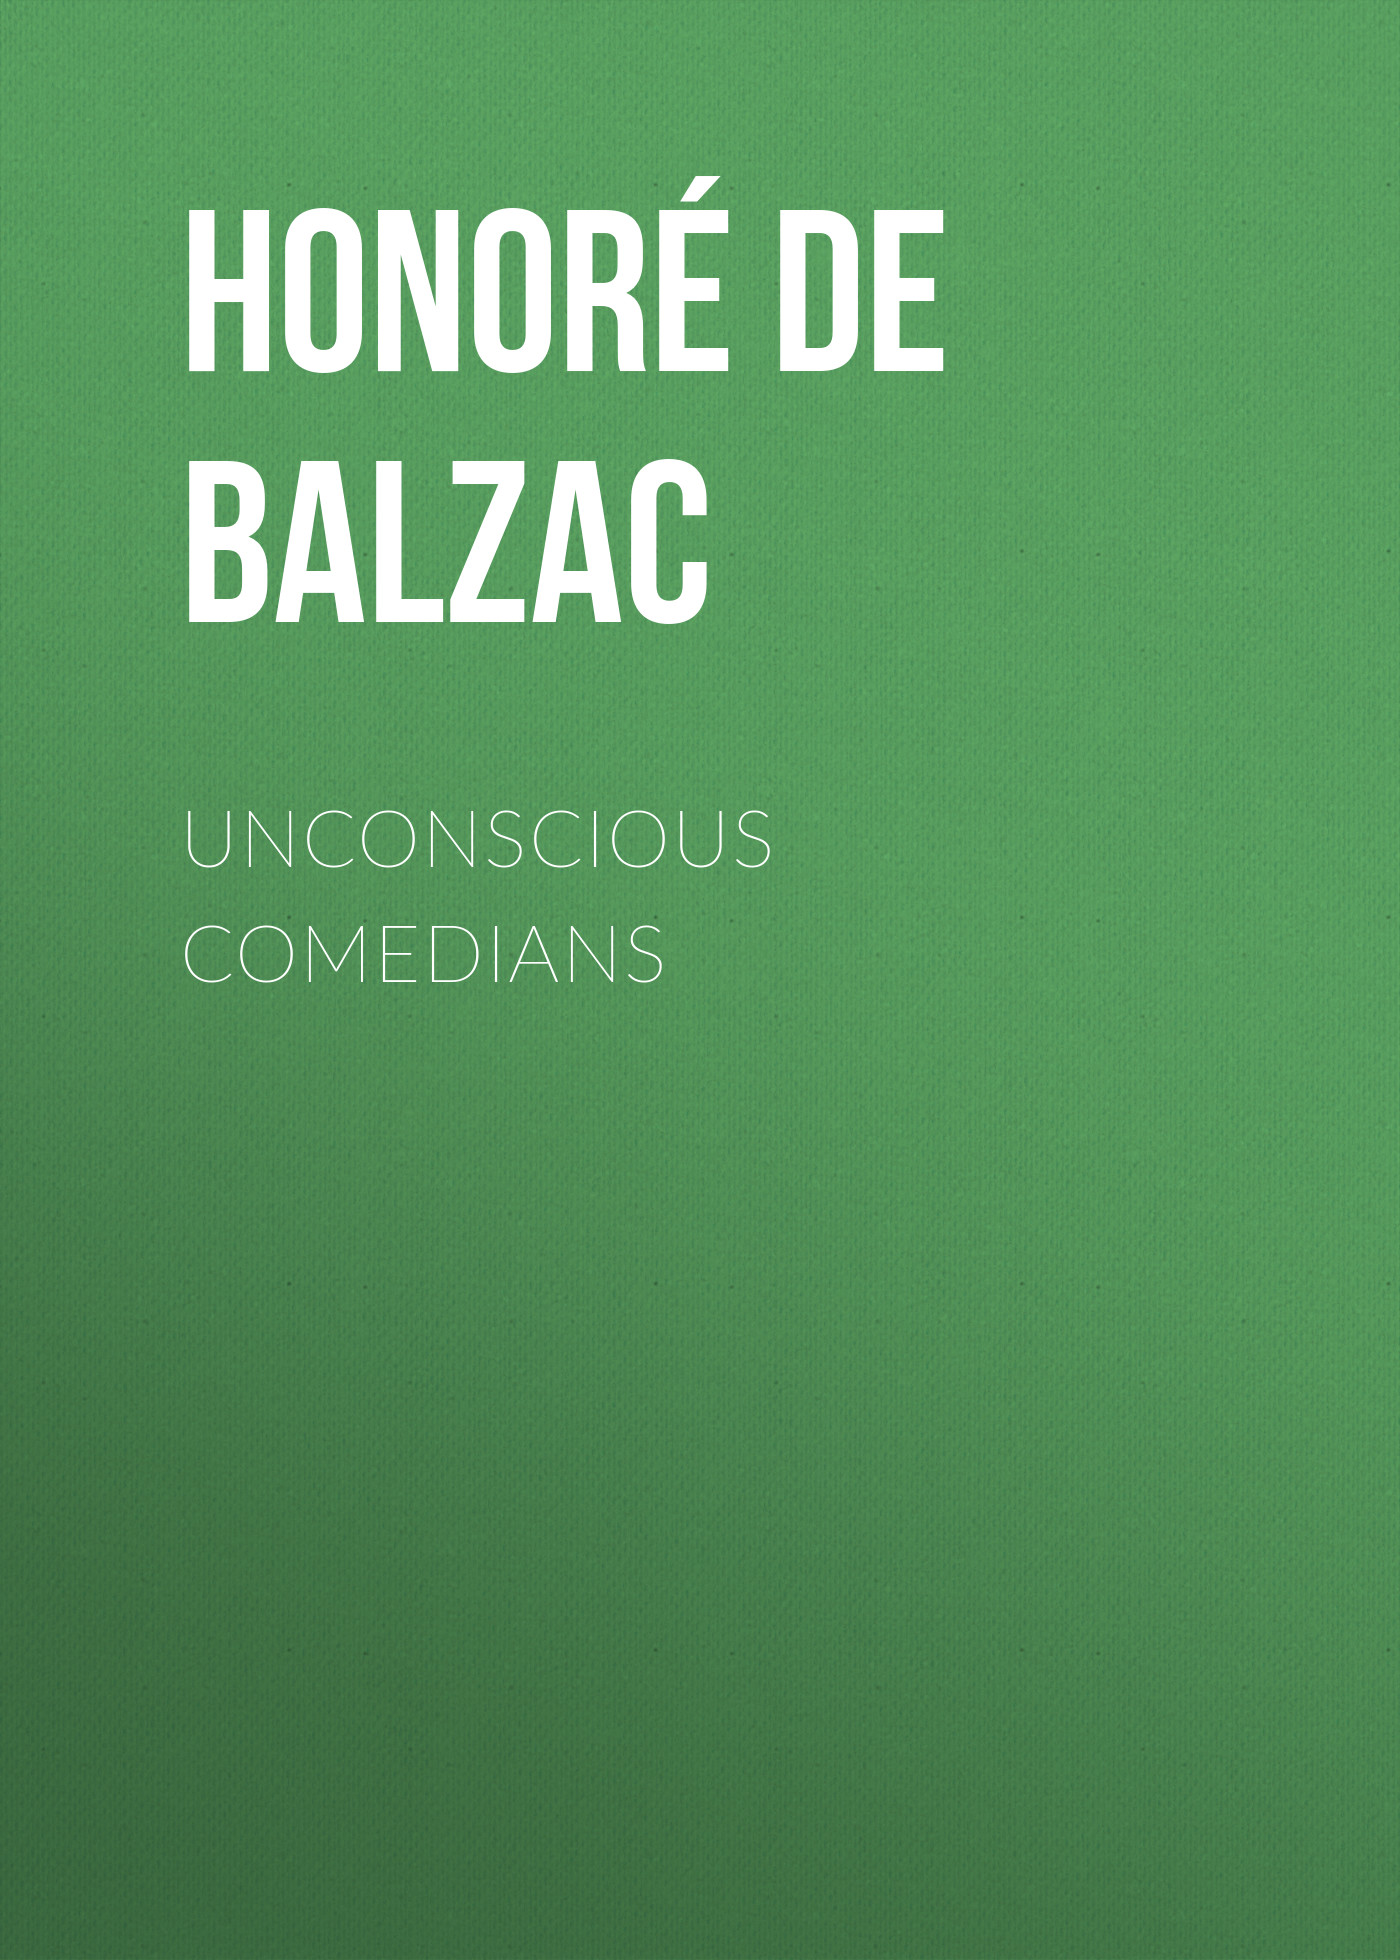 Книга Unconscious Comedians из серии , созданная Honoré Balzac, может относится к жанру Литература 19 века, Зарубежная старинная литература, Зарубежная классика. Стоимость электронной книги Unconscious Comedians с идентификатором 25020739 составляет 0 руб.